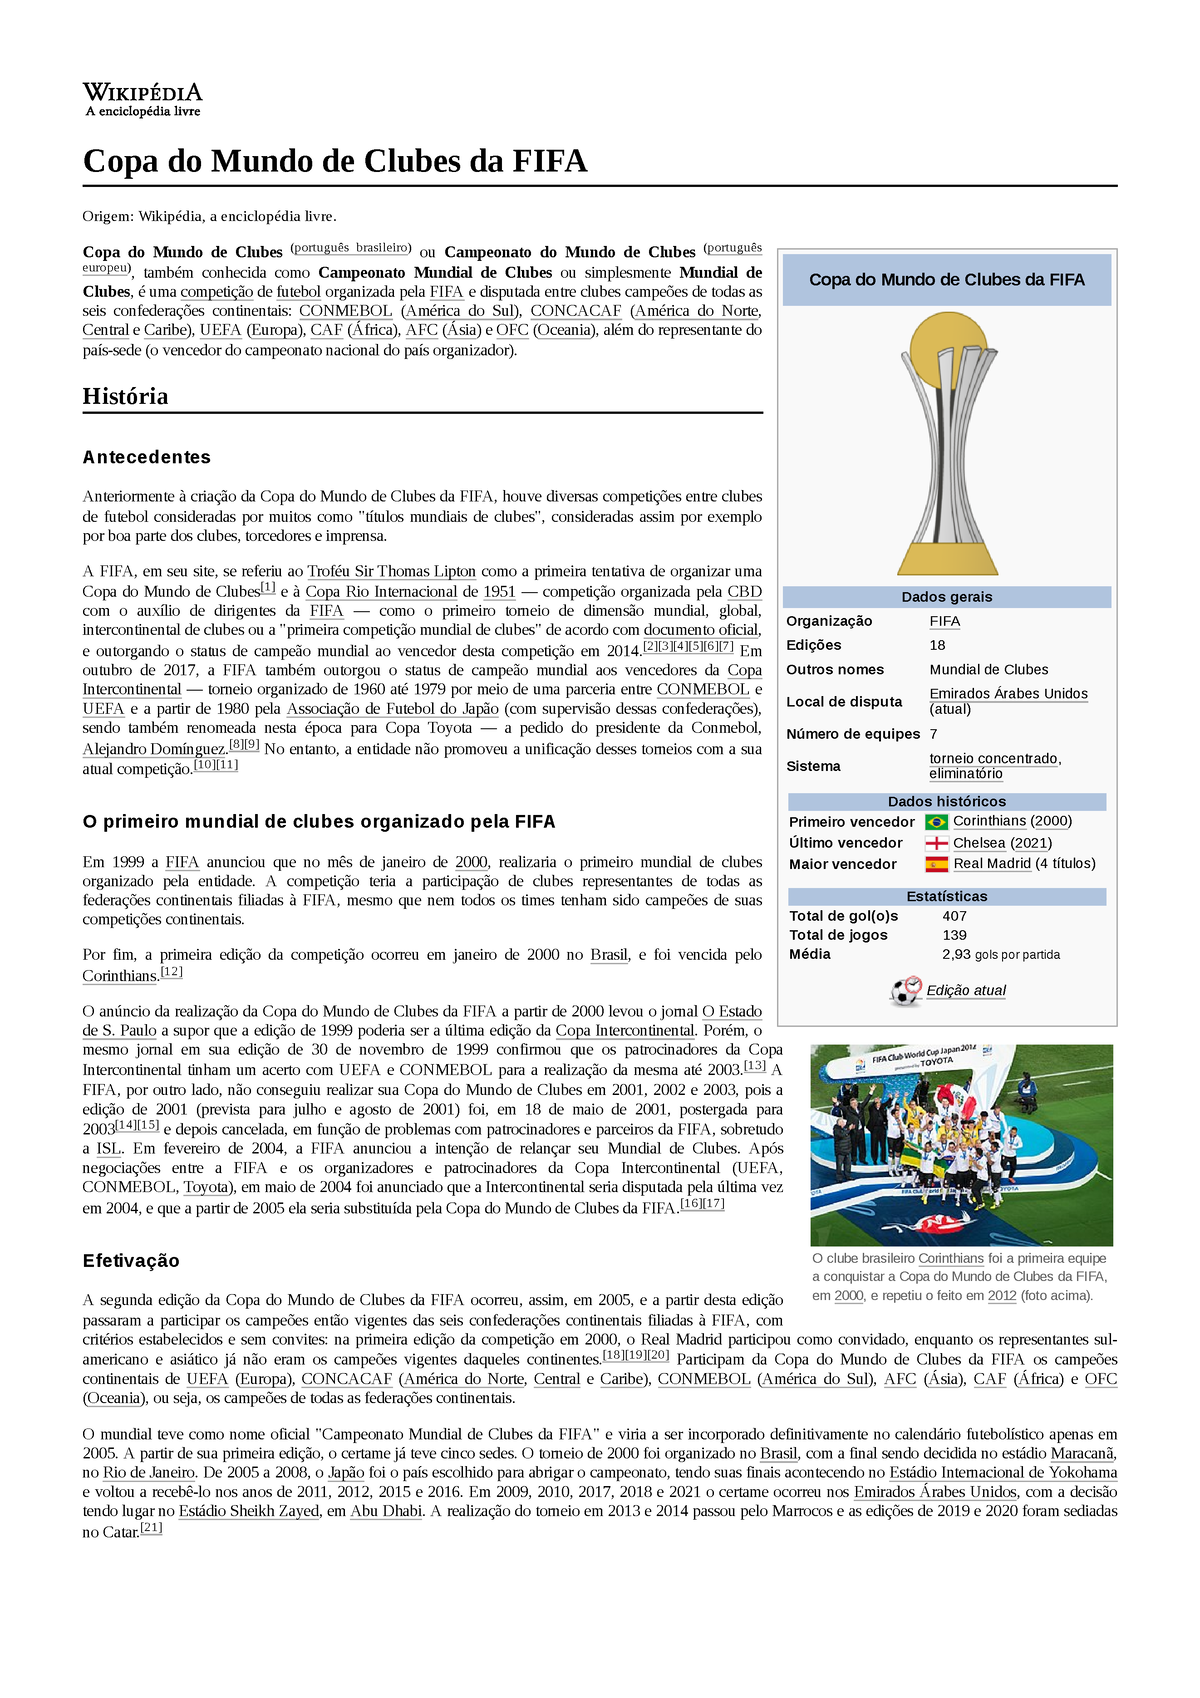 Club Atlético Boca Juniors – Wikipédia, a enciclopédia livre